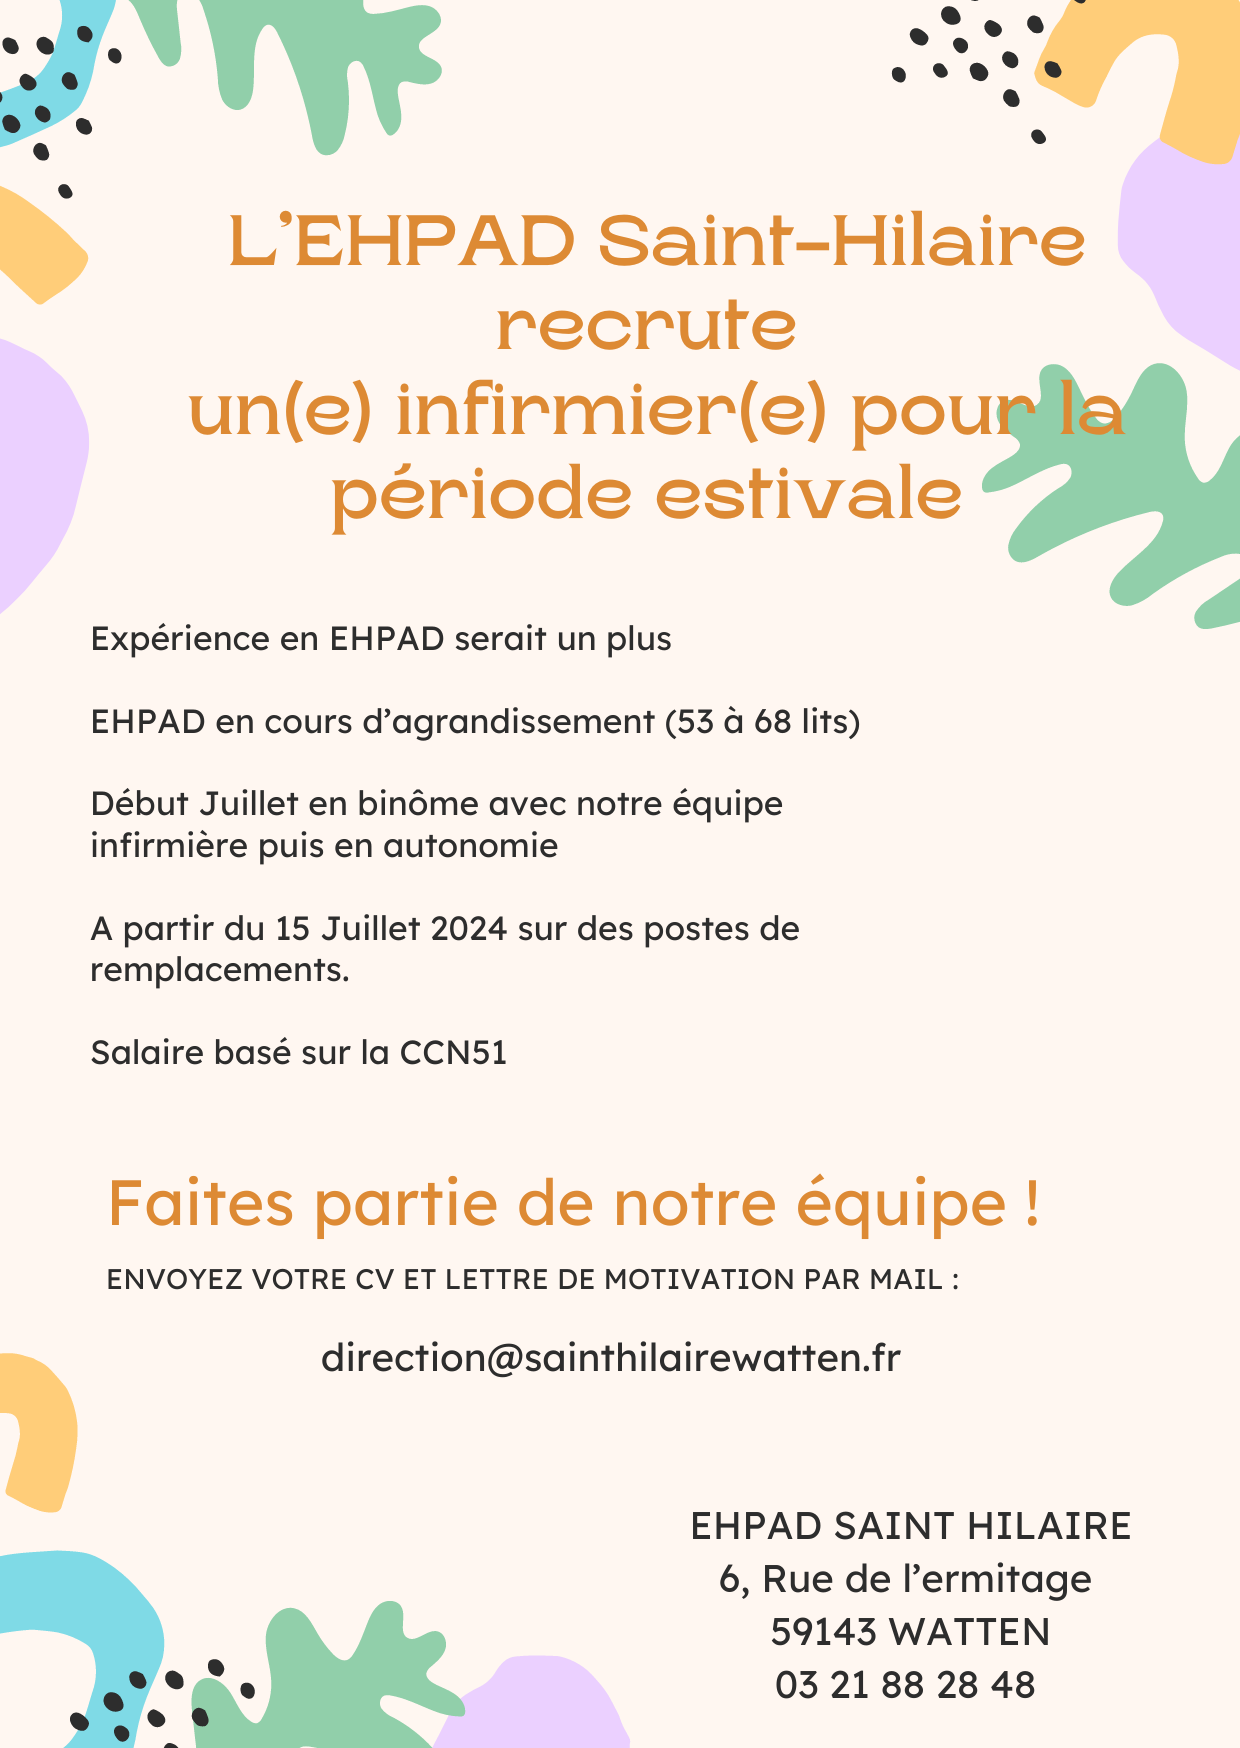 L’EHPAD Saint-Hilaire recrute un(e) infirmier(e) pour la période estivale